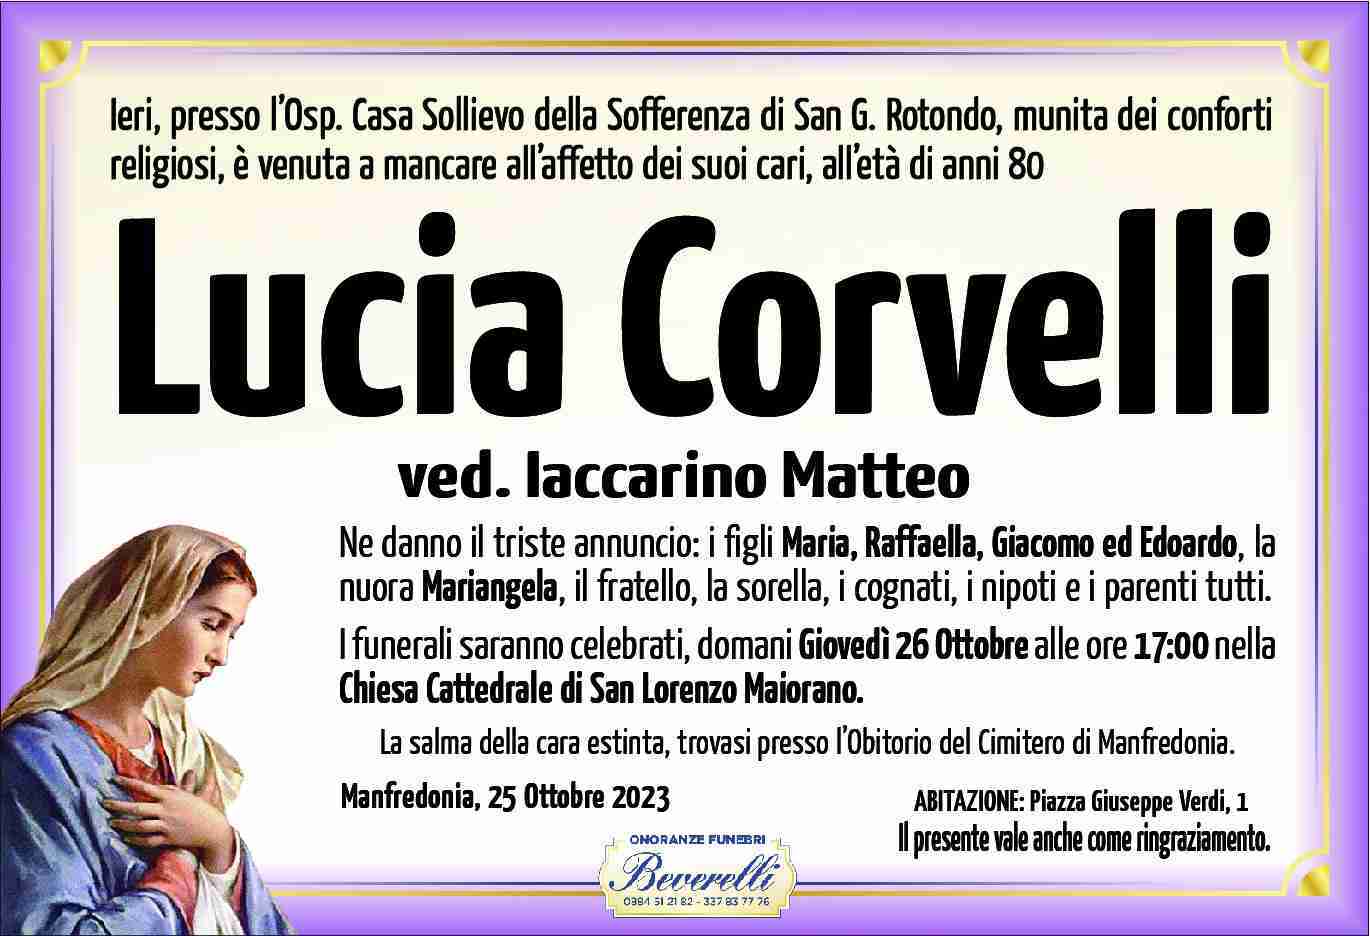 Lucia Corvelli